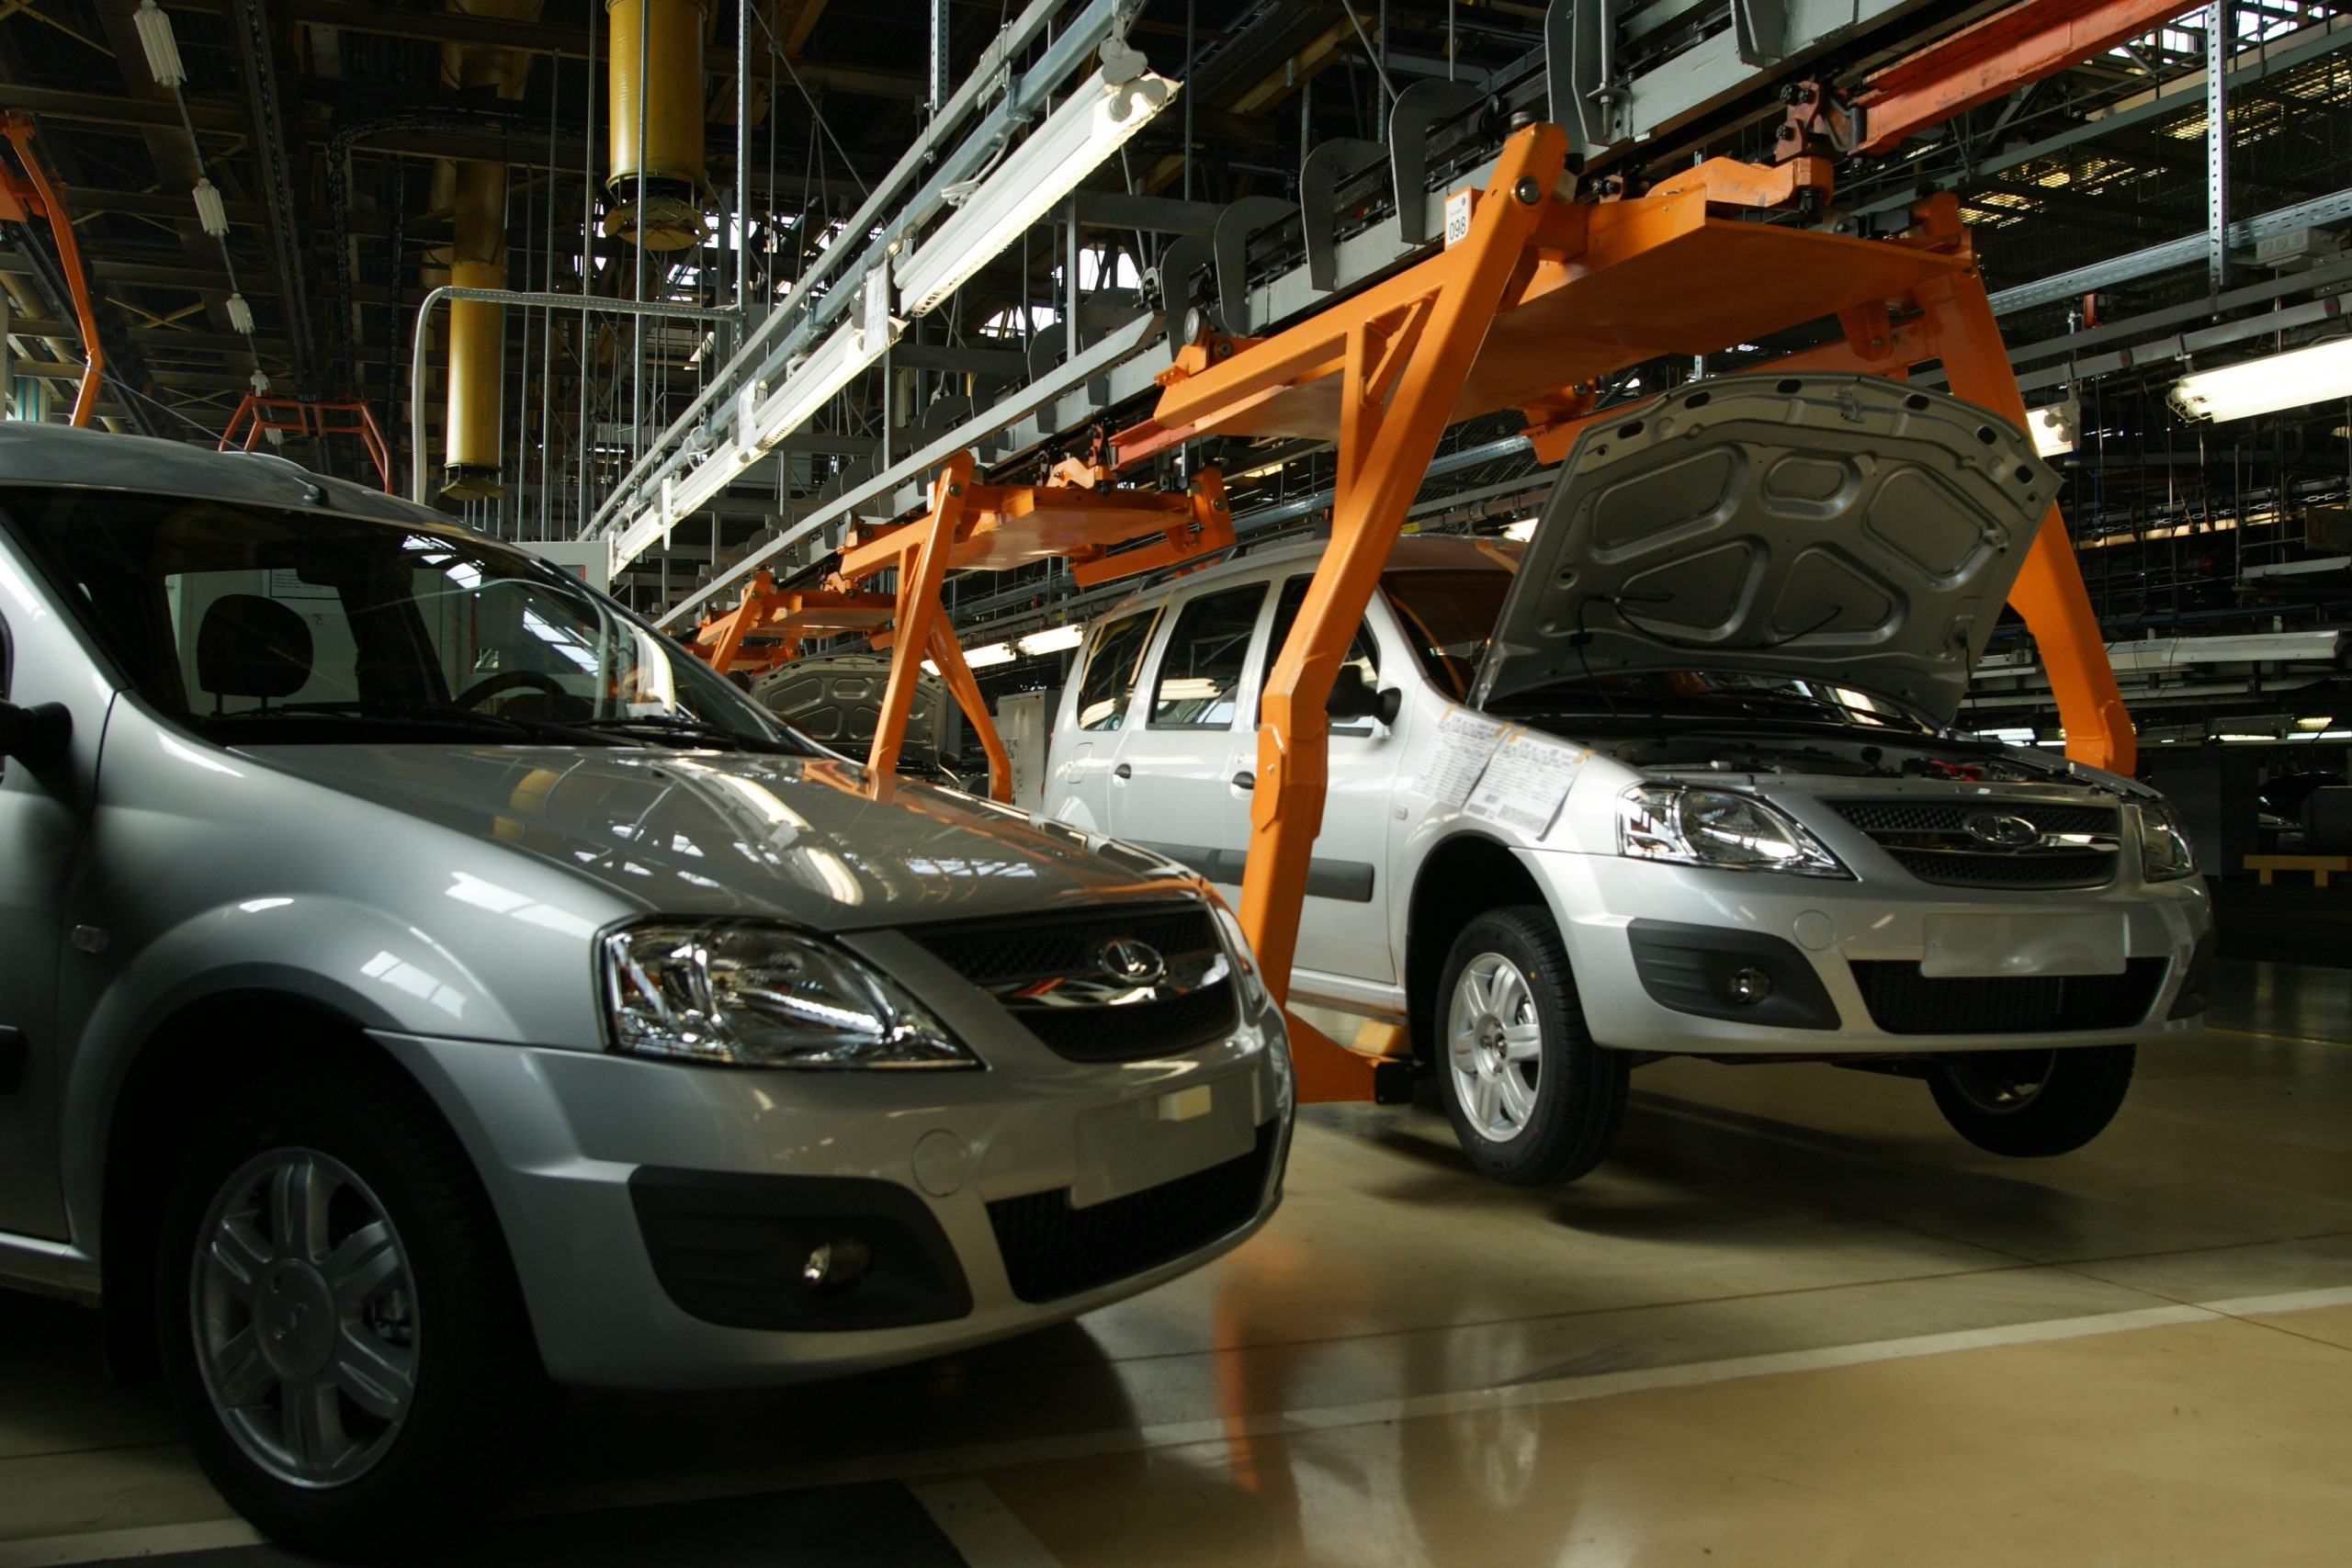 АвтоВАЗ подал заявку на регистрацию еще двух названий для будущих моделей